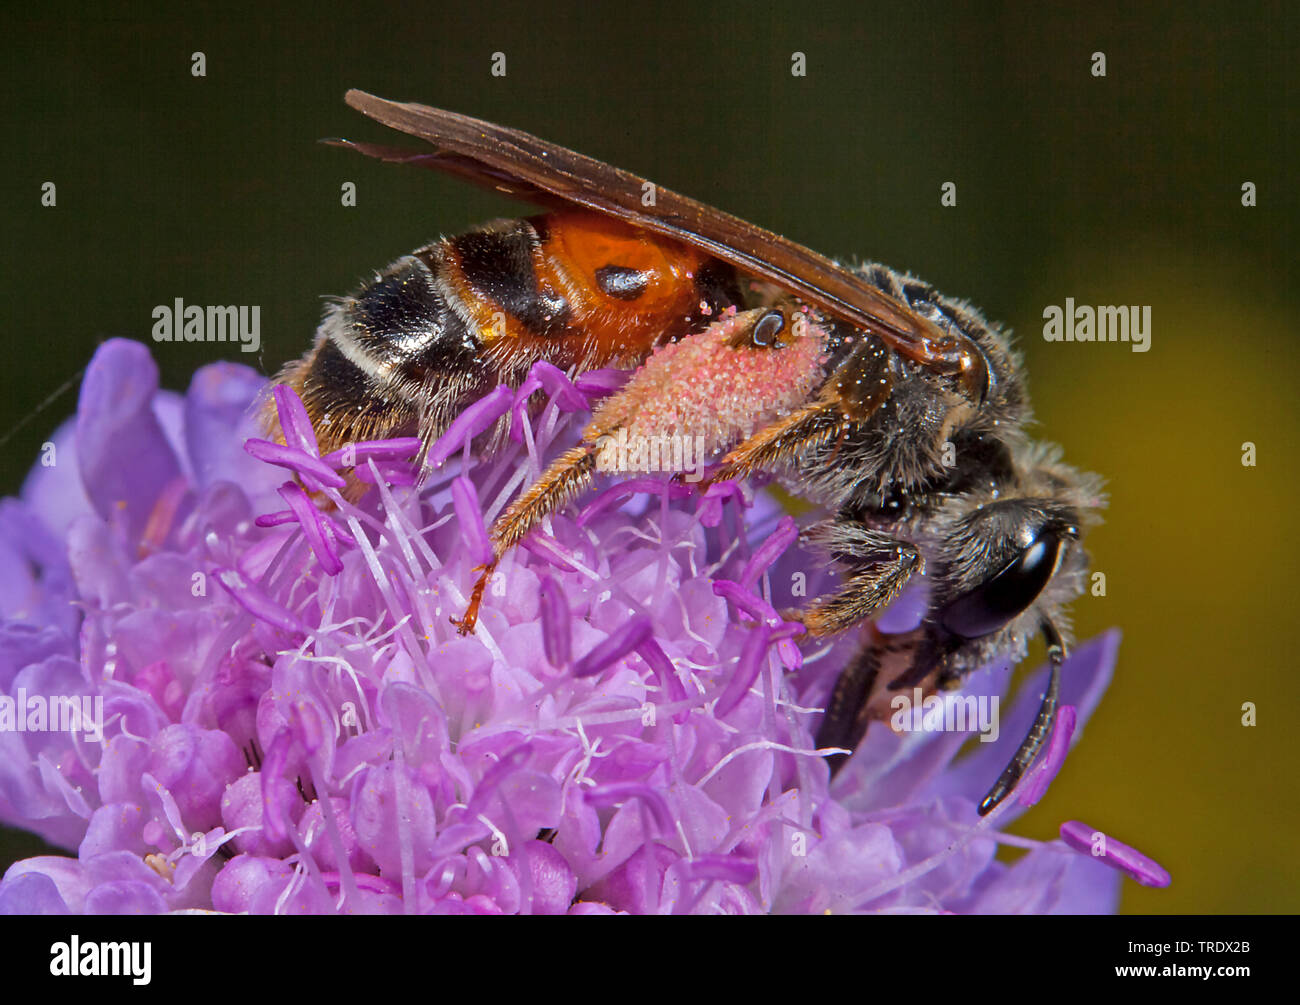 Scabious grande abeille Andrena hattorfiana (exploitation minière), sur scabious, Allemagne Banque D'Images